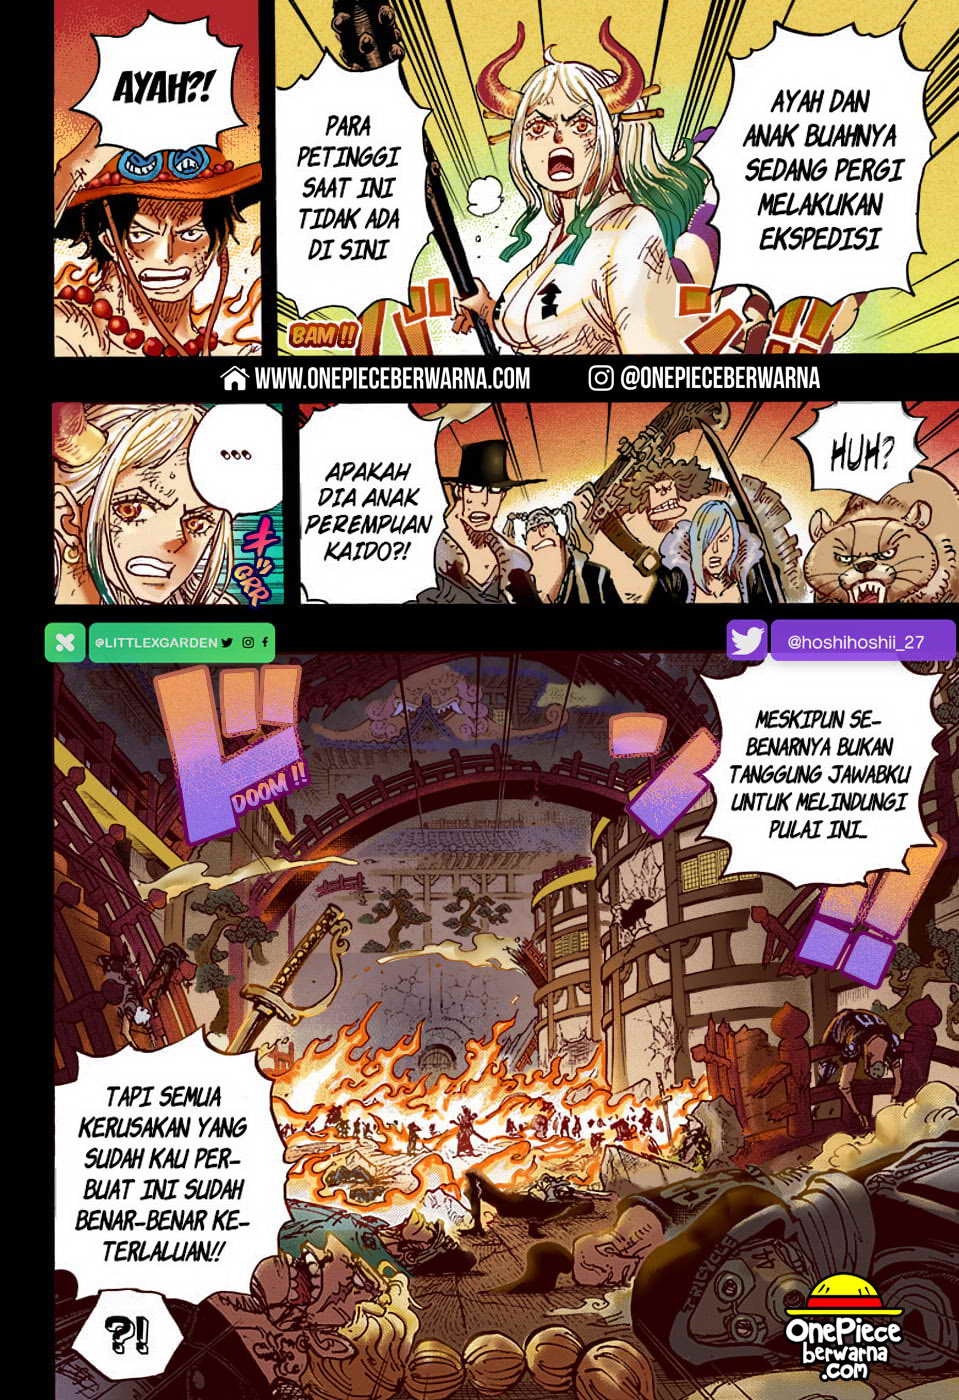 One Piece Berwarna Chapter 999